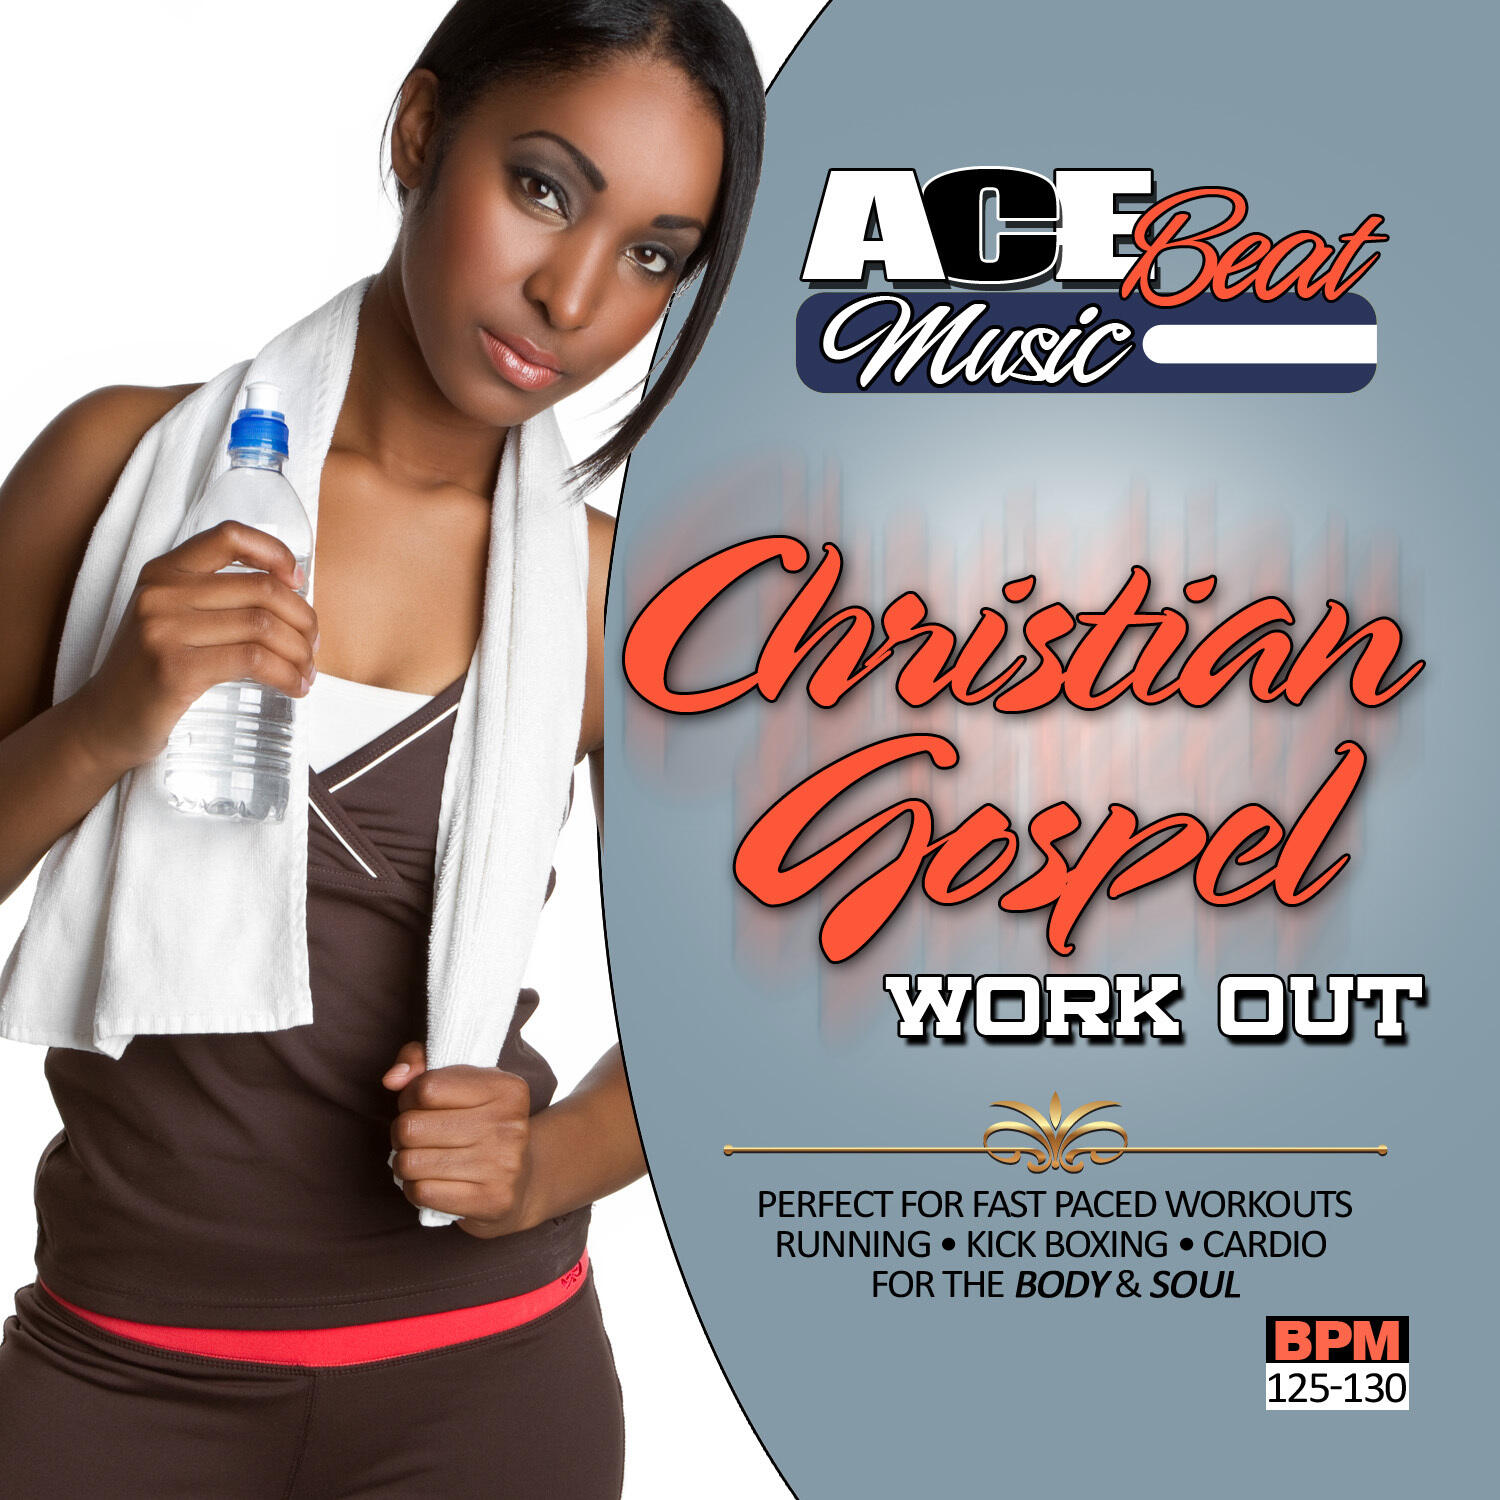 Acebeat Music Christian Gospel Workout iHeart